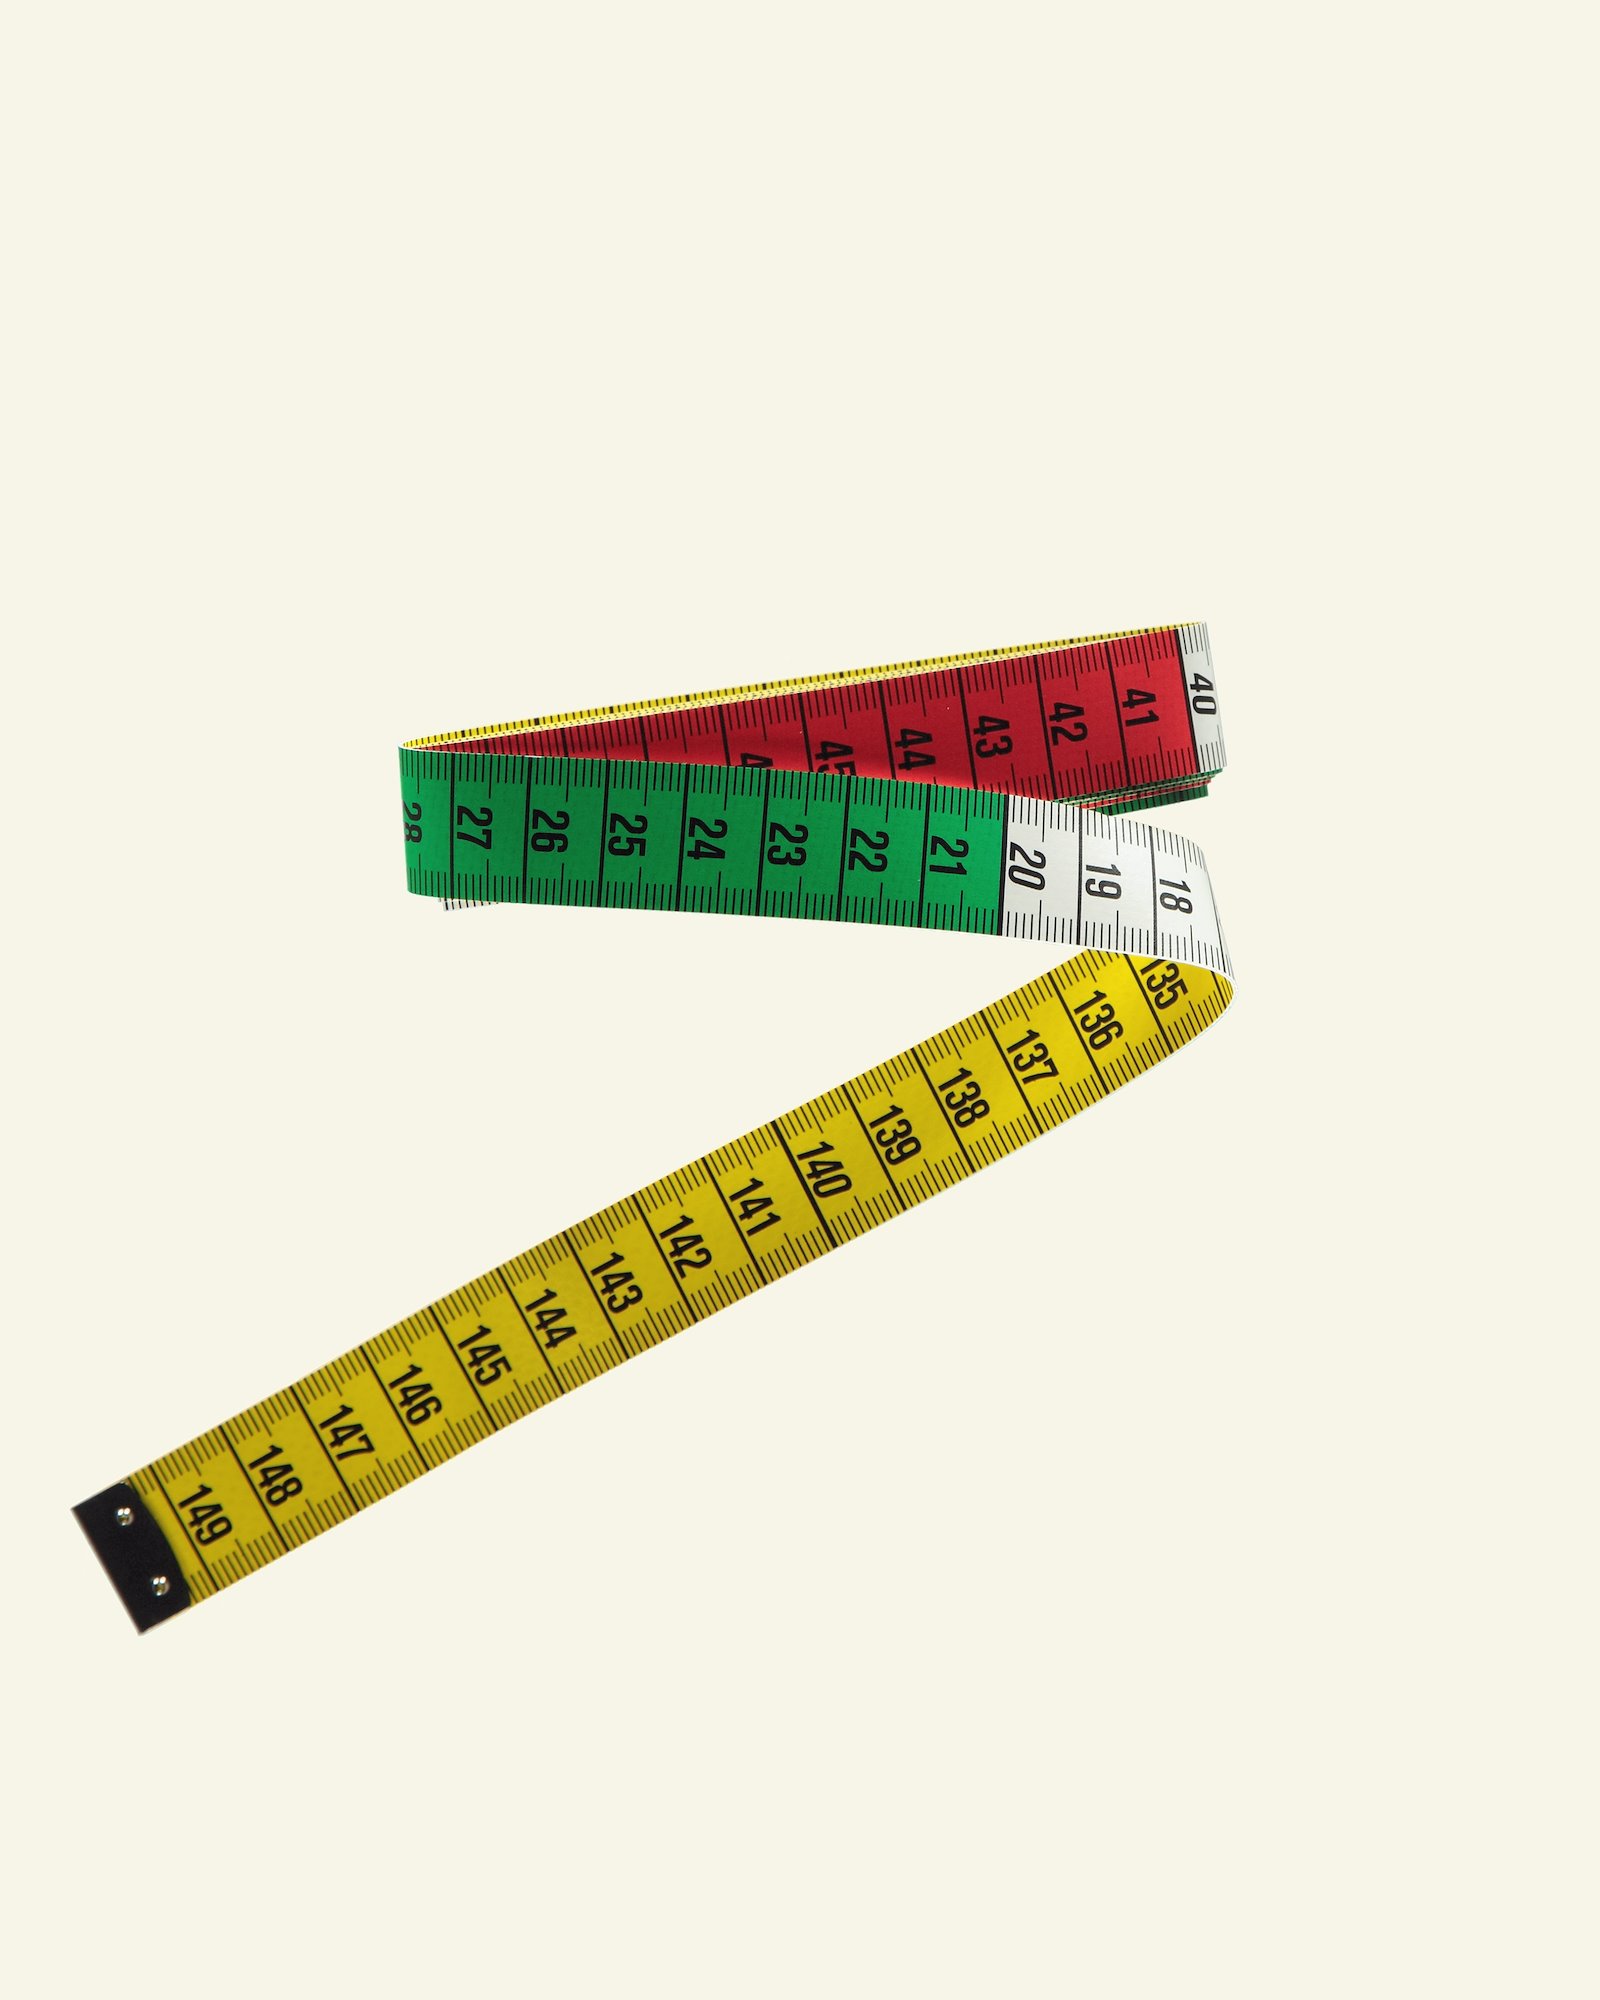 Prym tape measurer 150 cm 41014_pack